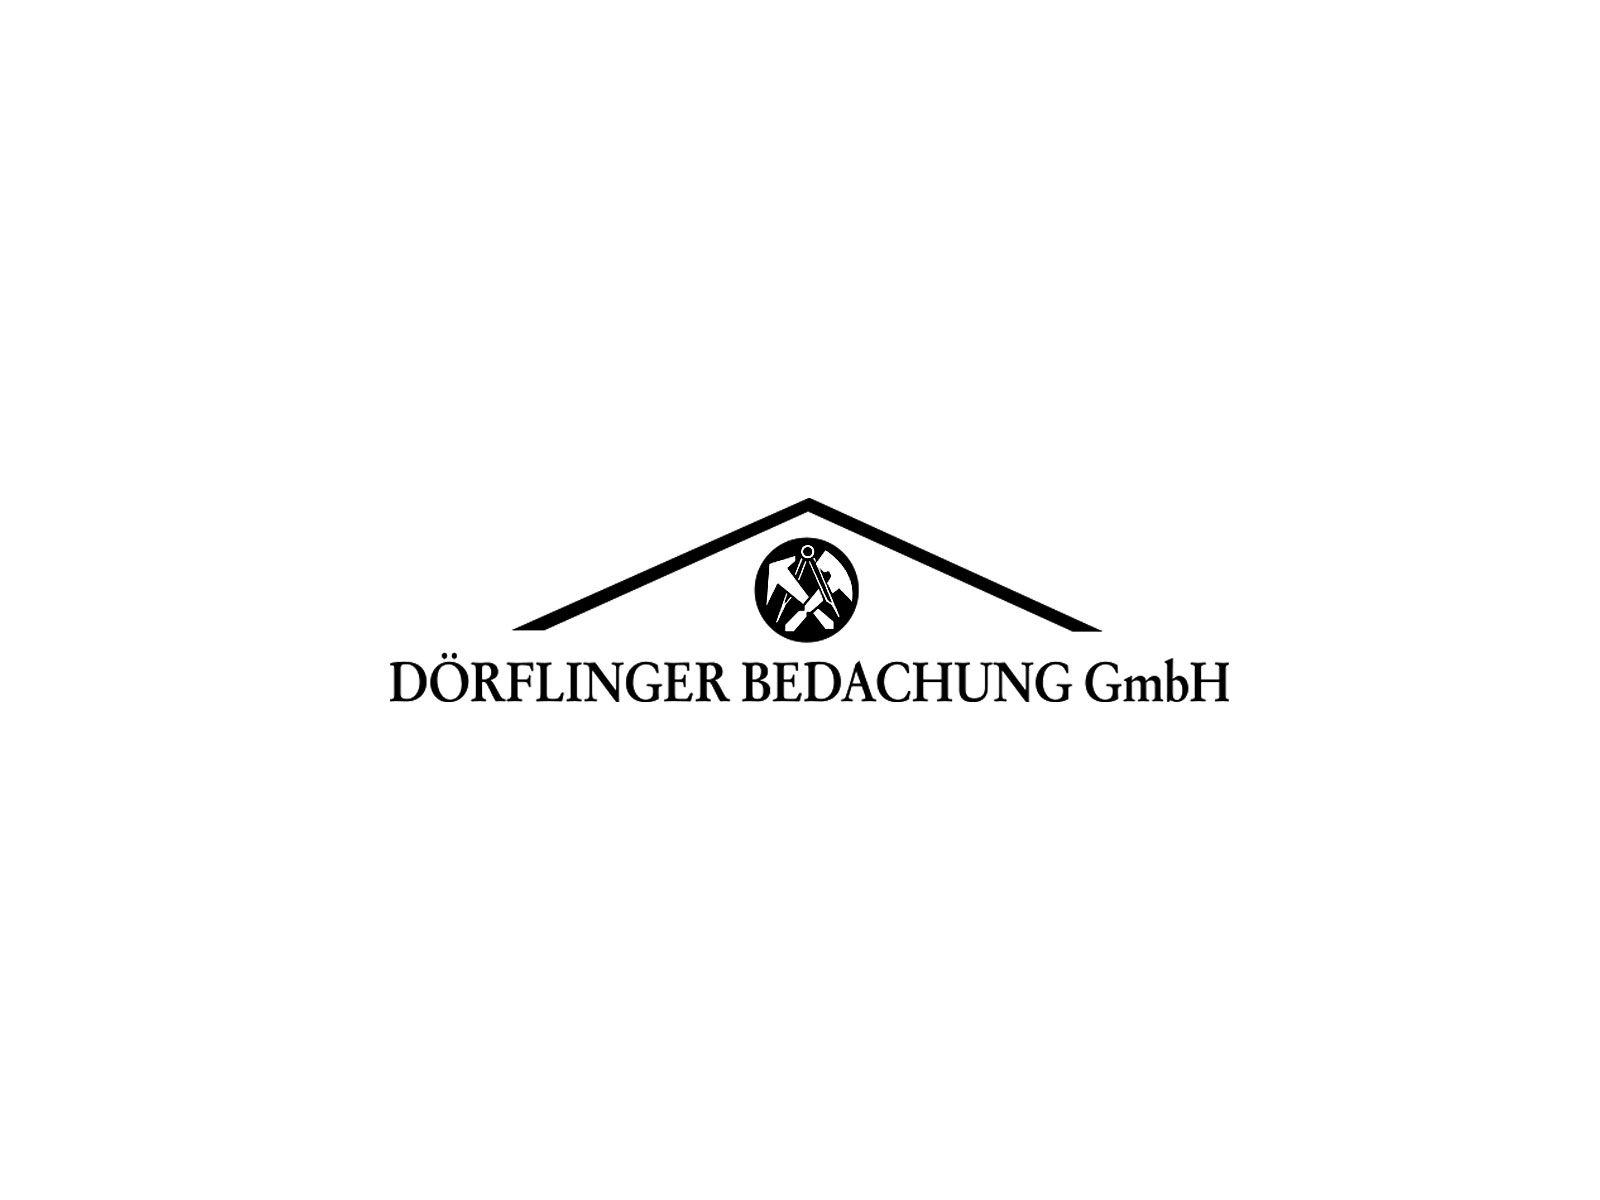 Dörflinger Bedachungs- und Fassadenbau GmbH & Co.